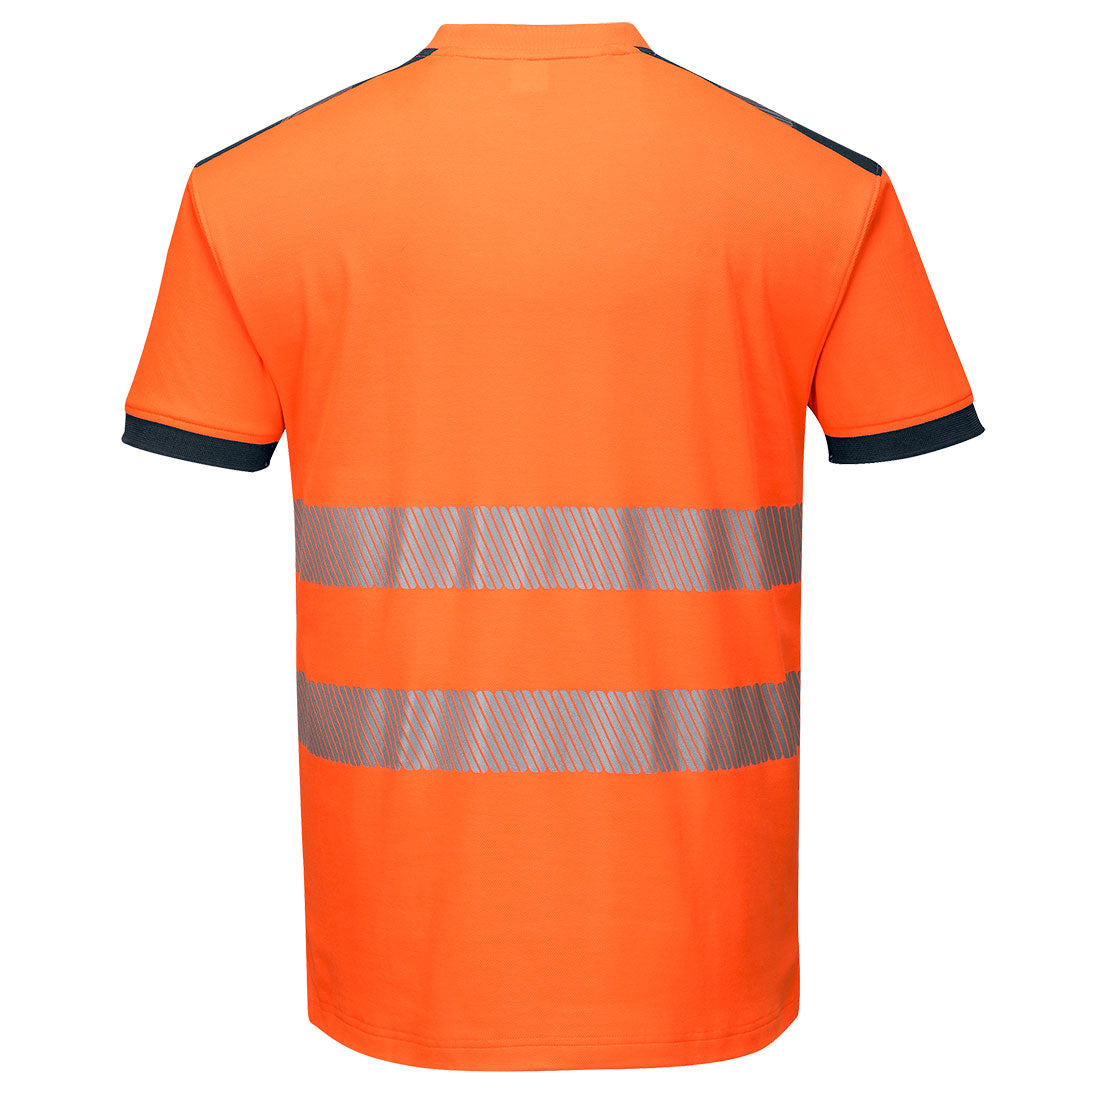 Portwest T181 PW3 Hi-Vis T-Shirt - Orange Navy 1